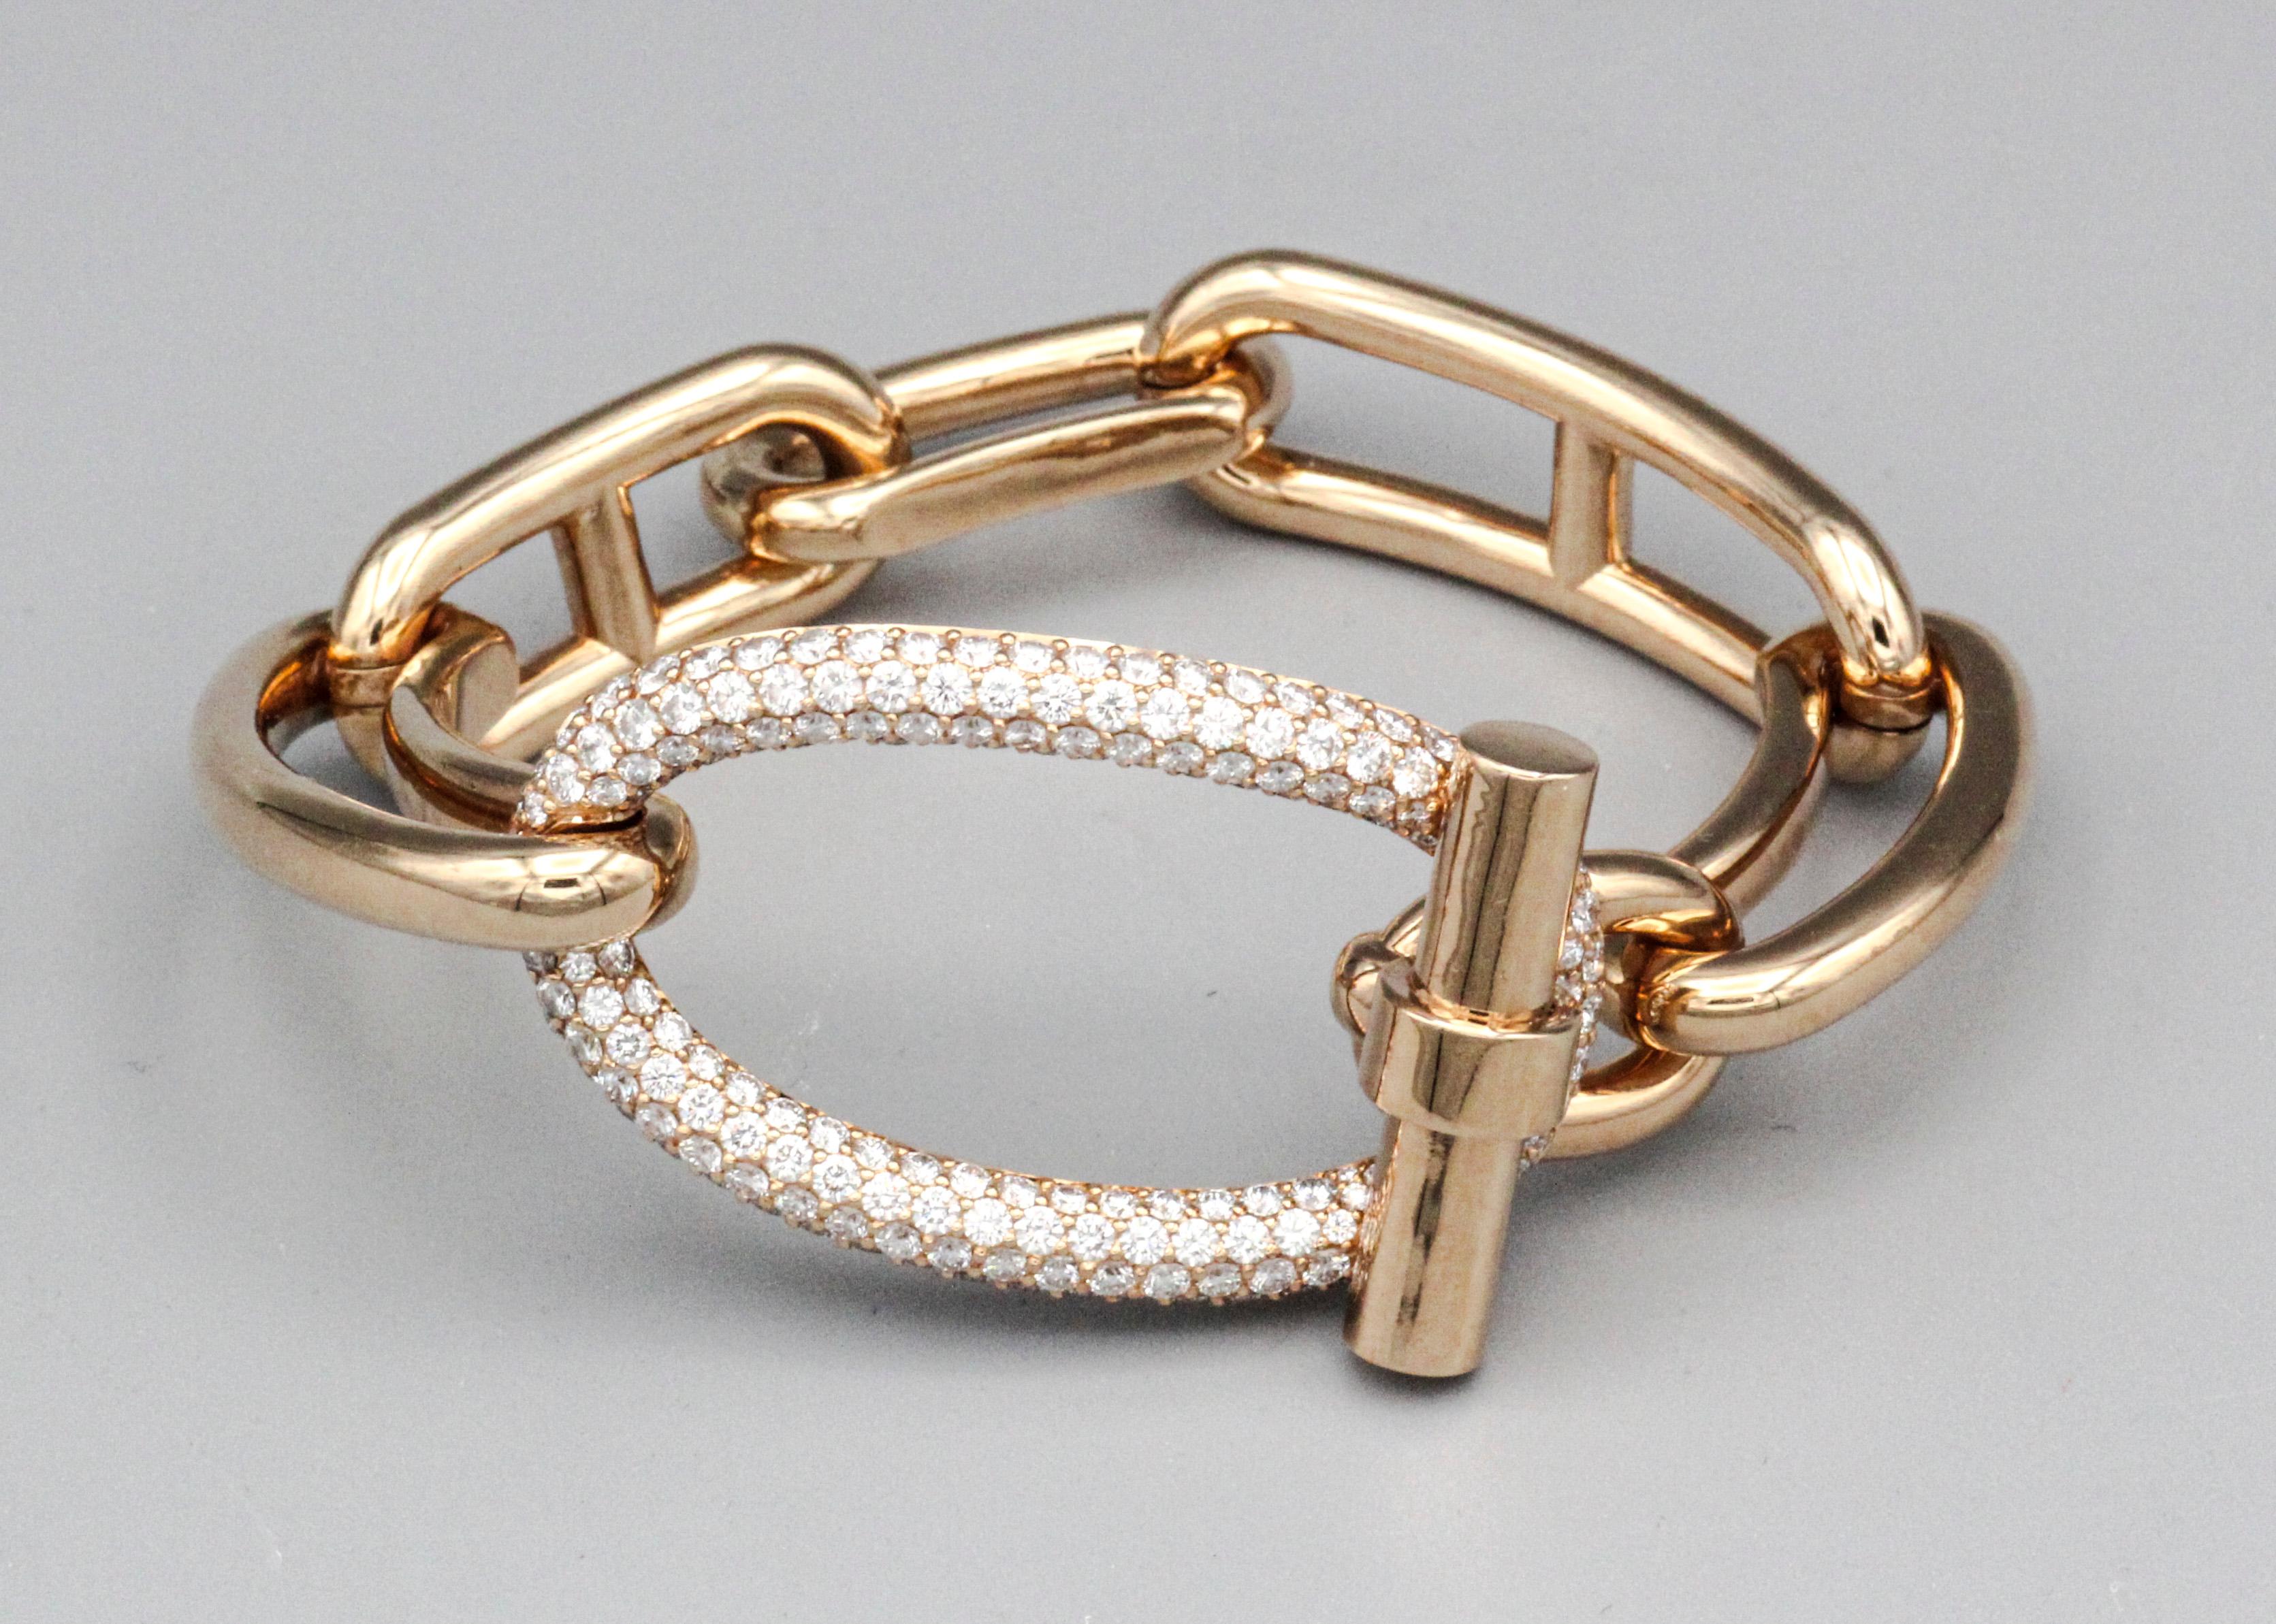 Umarmen Sie opulente Eleganz: Hermès Adage Pave Diamond 18 Karat Roségold-Armband

Tauchen Sie ein in den Luxus mit dem fesselnden Hermès Adage Pave Diamond 18 Karat Rose Gold Armband. Dieses exquisite Stück ist mehr als nur Schmuck: Es ist ein